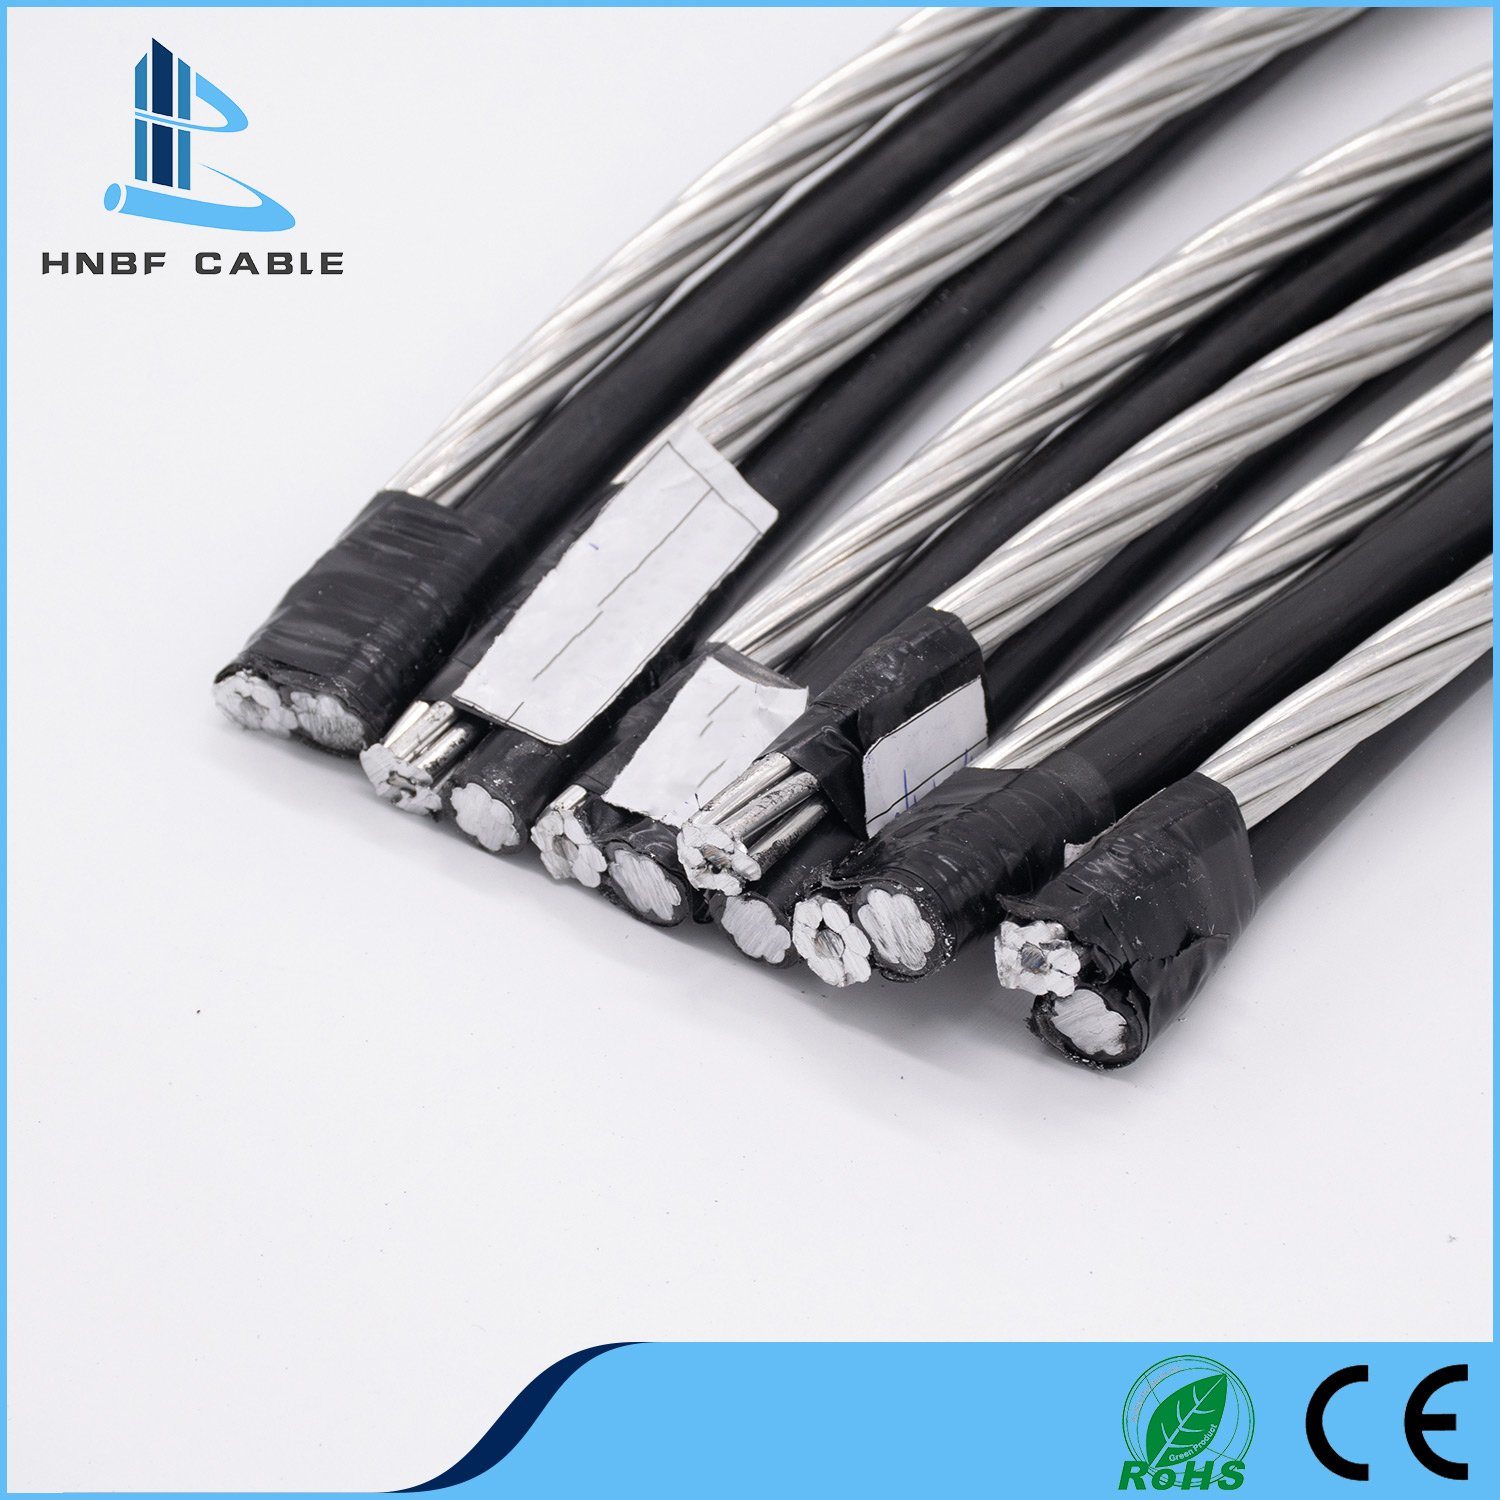 
                Cable de caída de servicio de alta calidad ABC cable de alta calidad cable eléctrico Cable
            